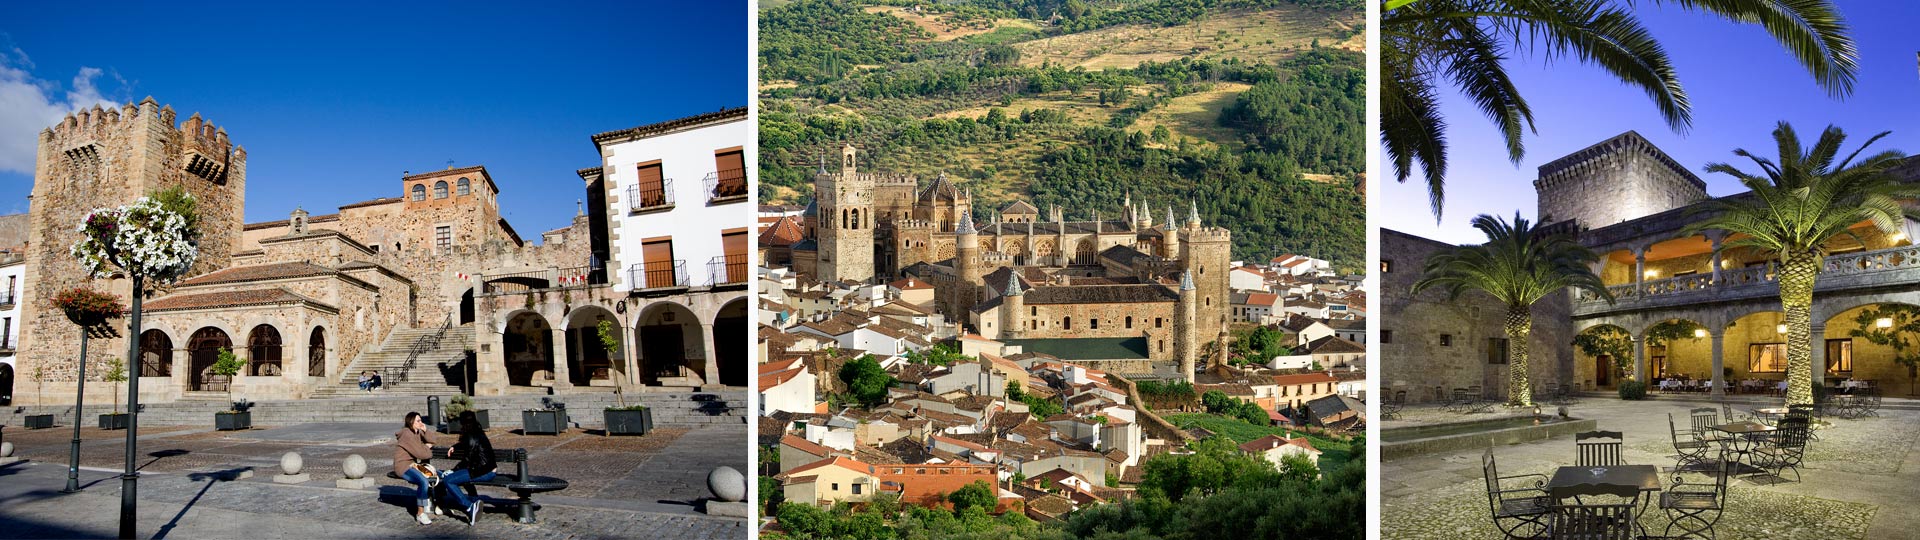 Paisajes de castillos en Extremadura: Cáceres, Guadalupe y Parador de Jarandilla de la Vera